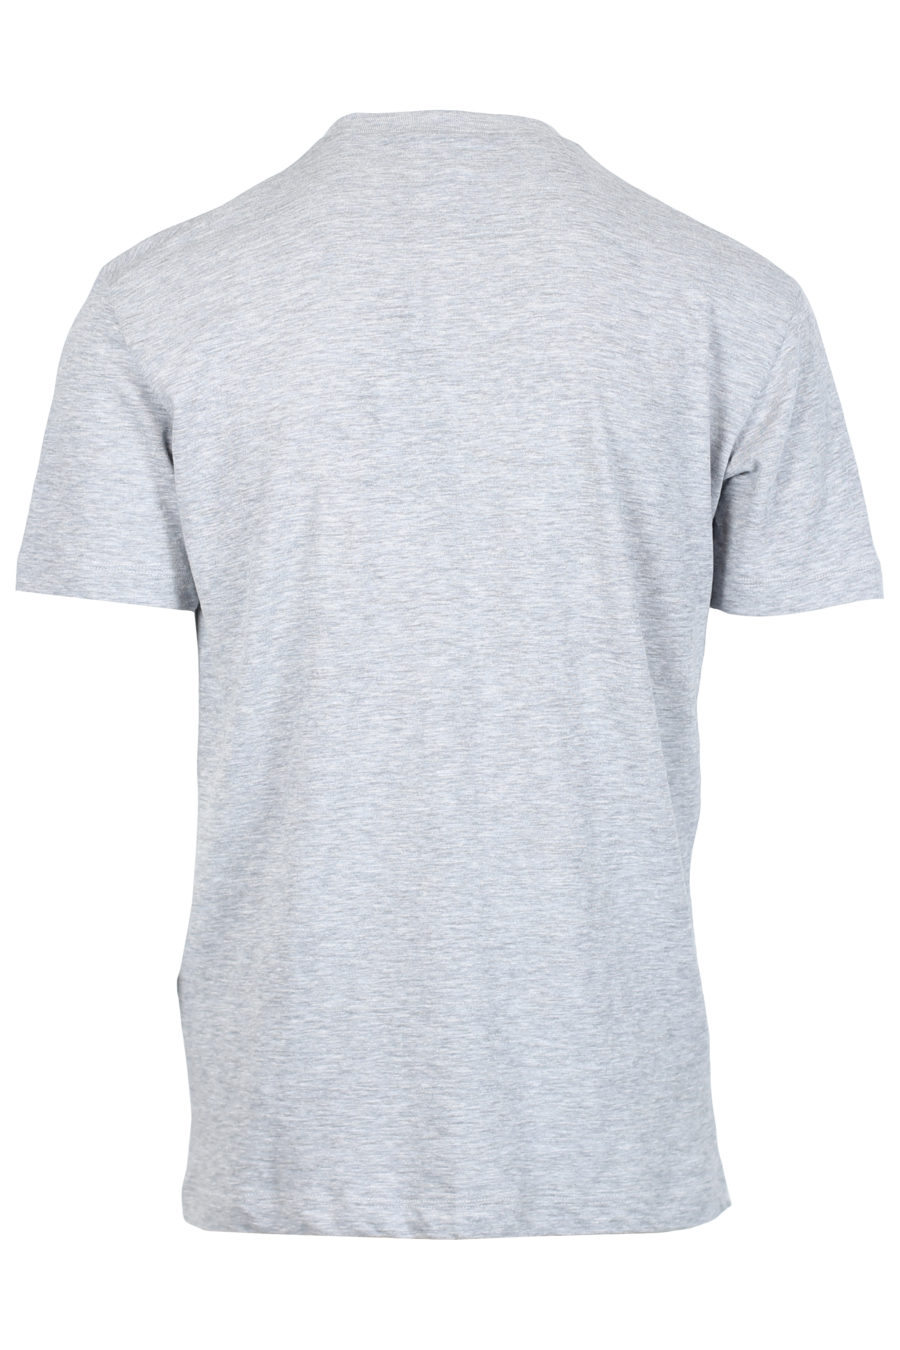 Camiseta gris con logo de la marca spray - IMG 2374